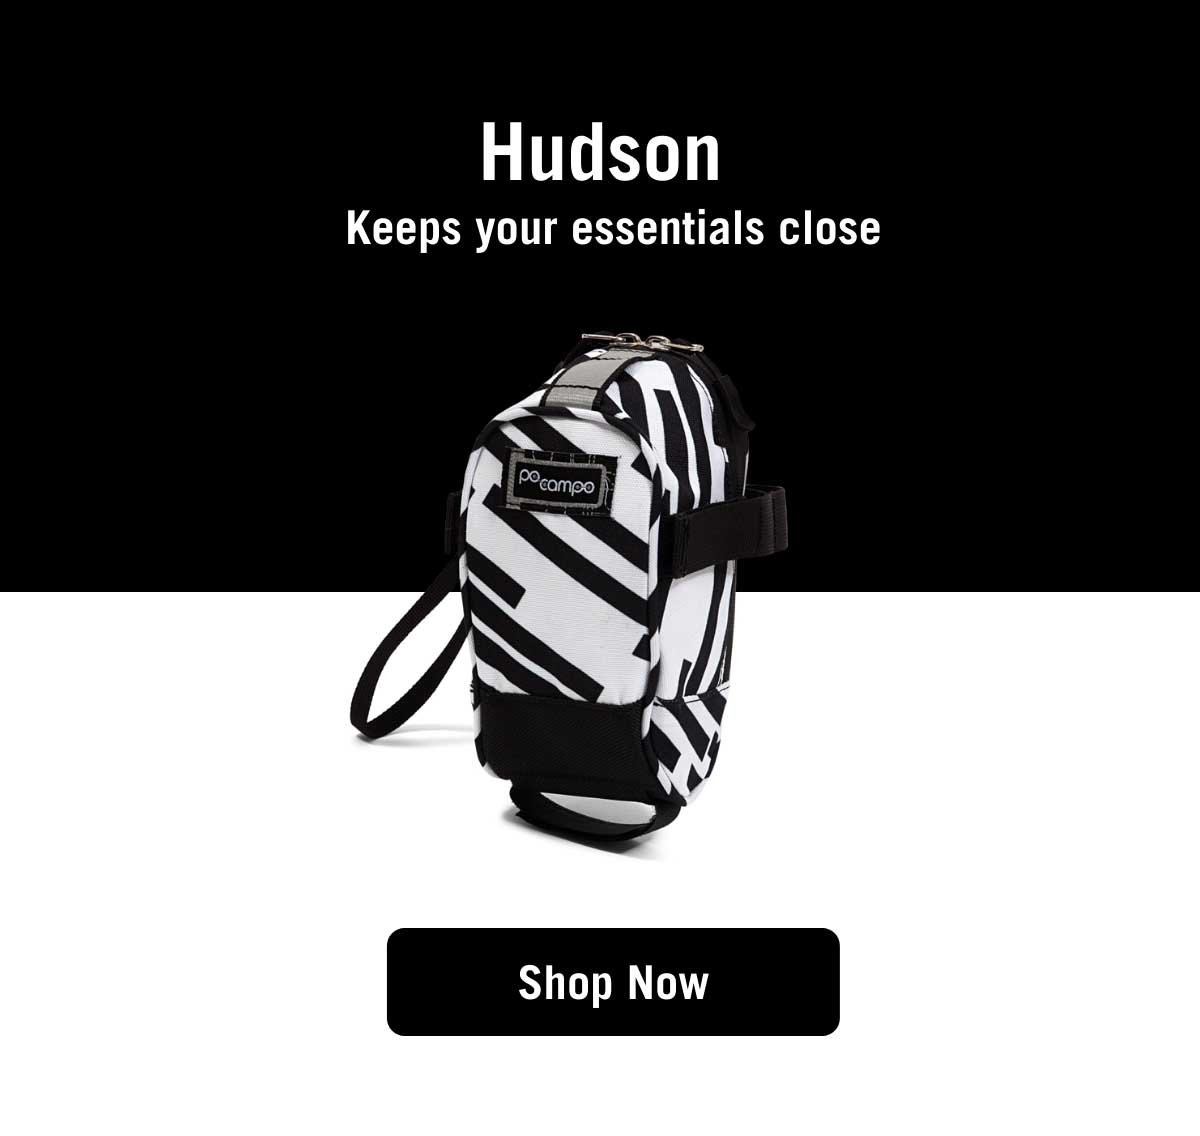 Hudson. Keeps your essentials close.